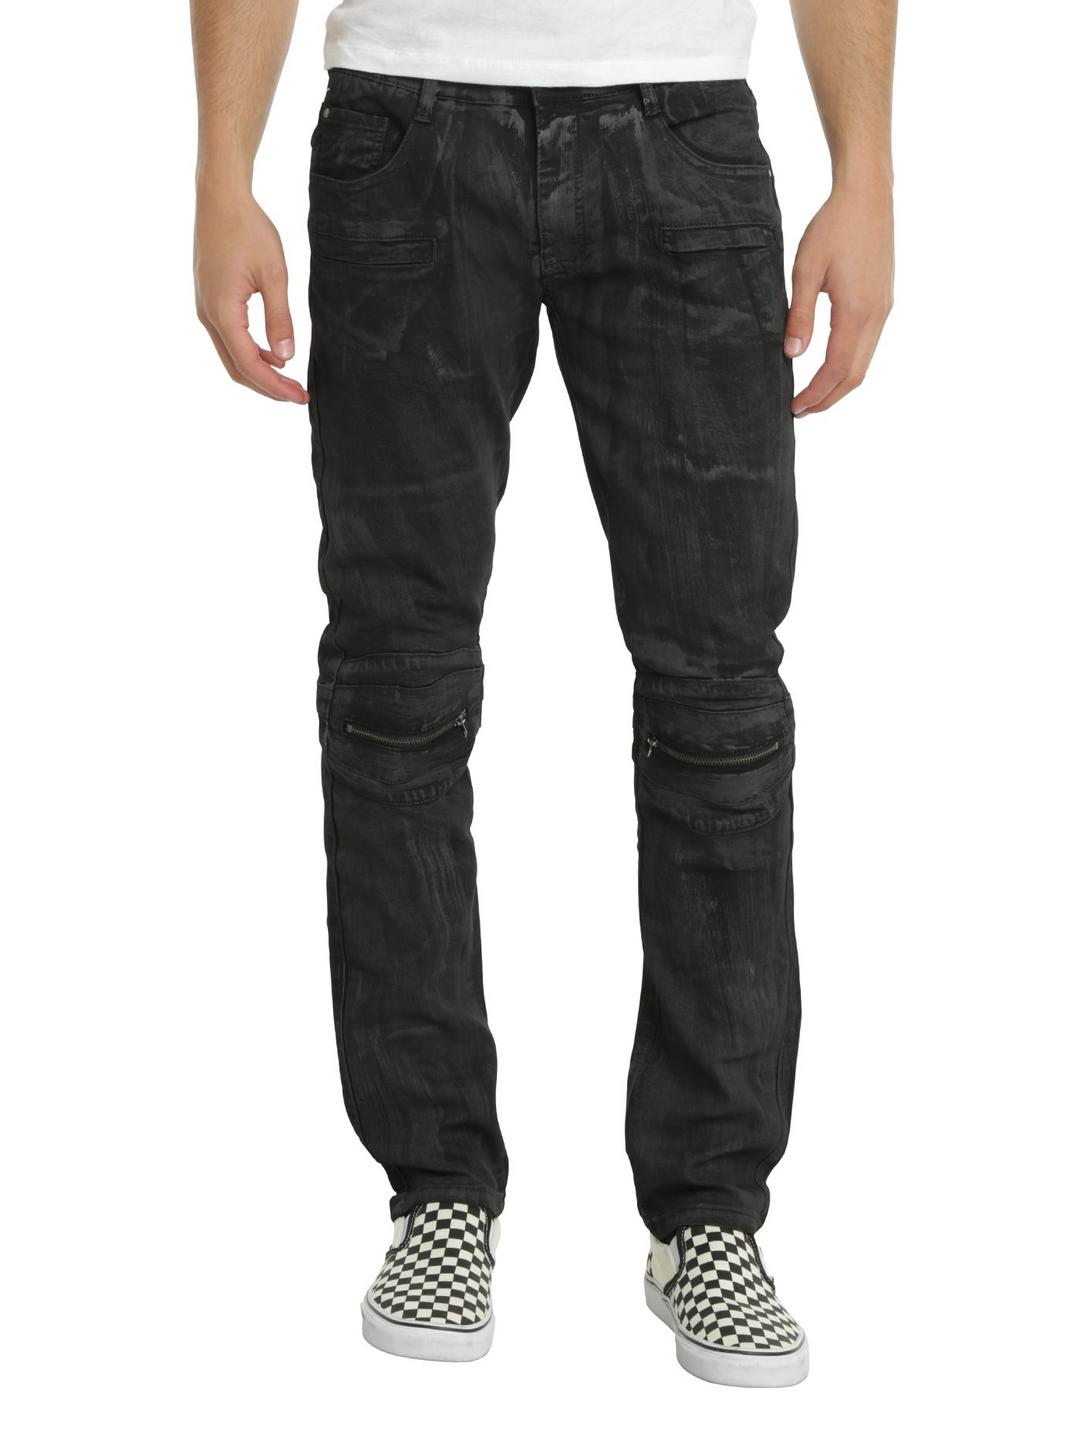 BlacX Black Wash Knee Zip Moto Skinny Jeans, BLACK, hi-res